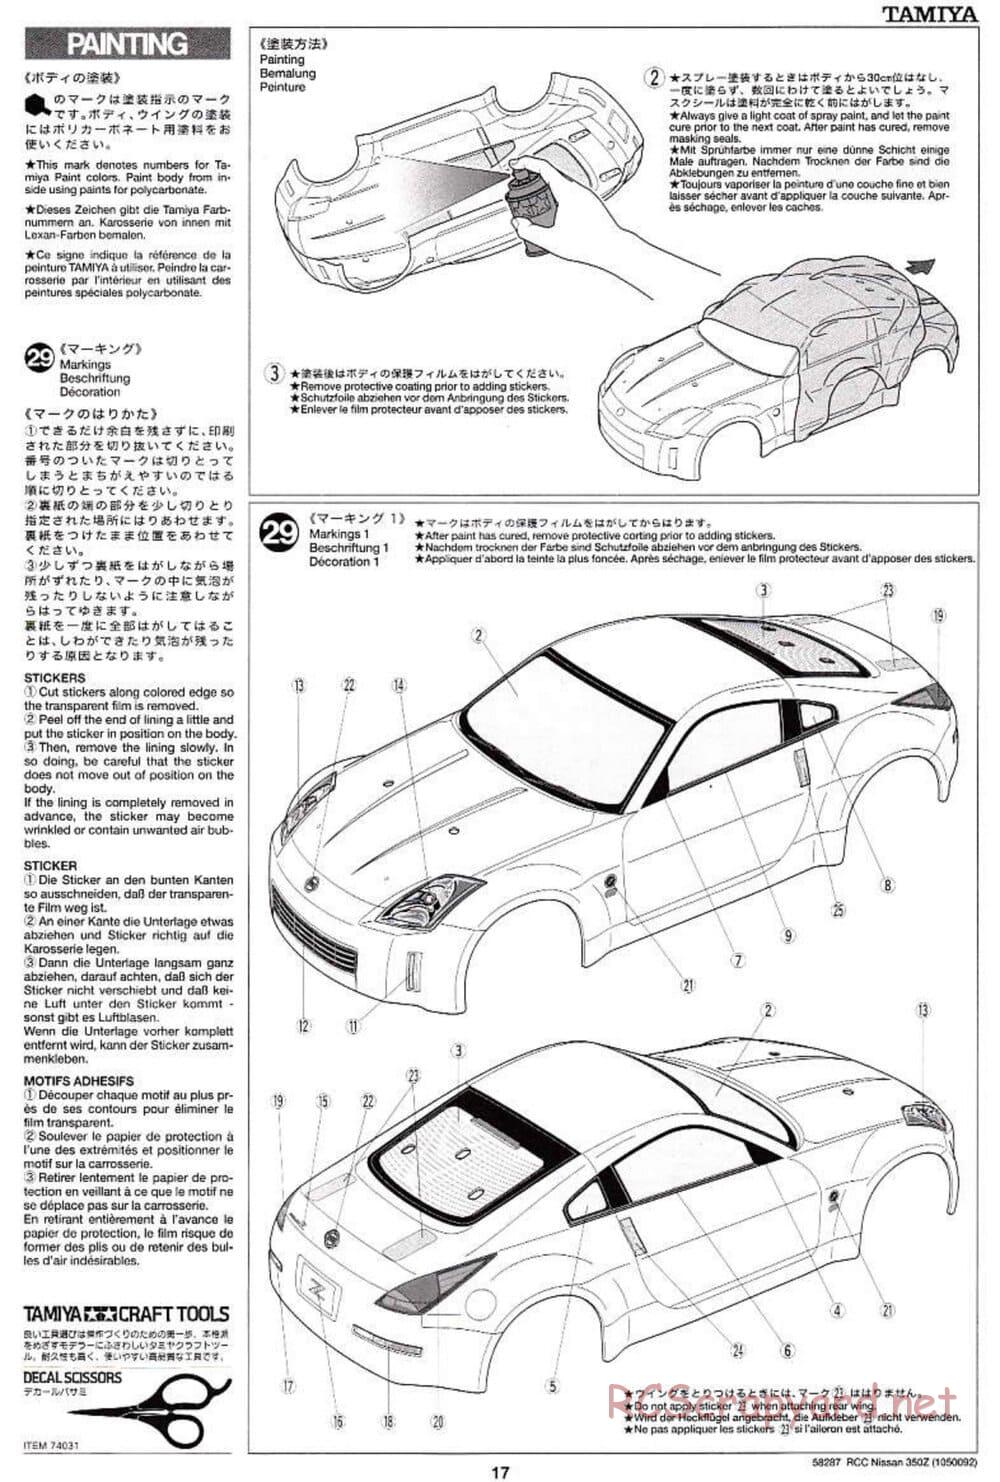 Tamiya - Nissan 350Z - TL-01 Chassis - Manual - Page 17